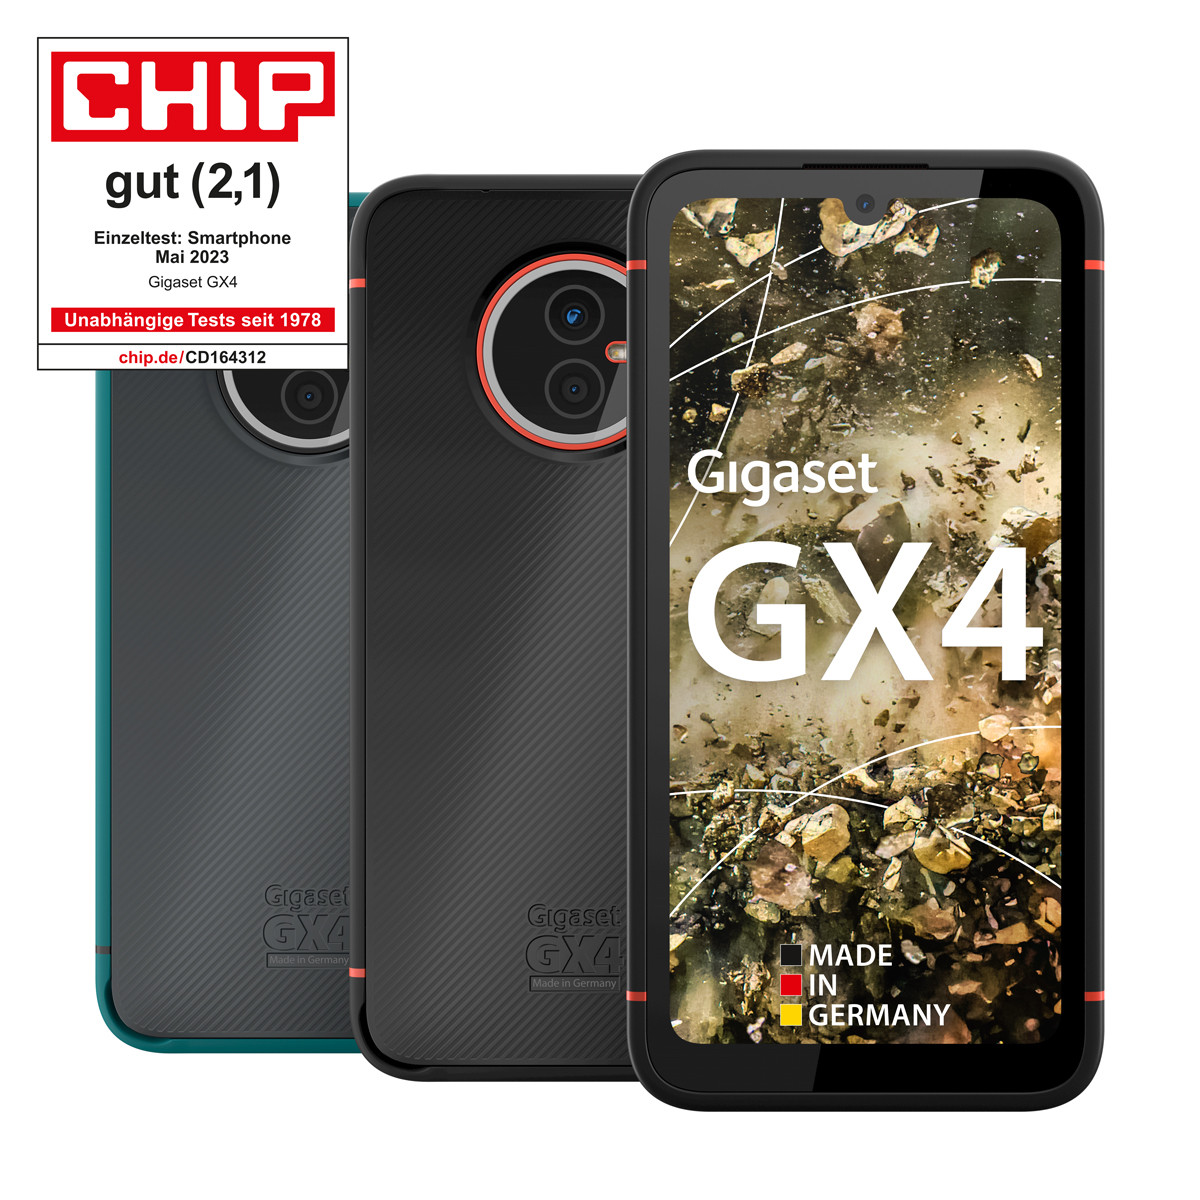 Das Outdoor-Smartphone GX4 online Gigaset kaufen 